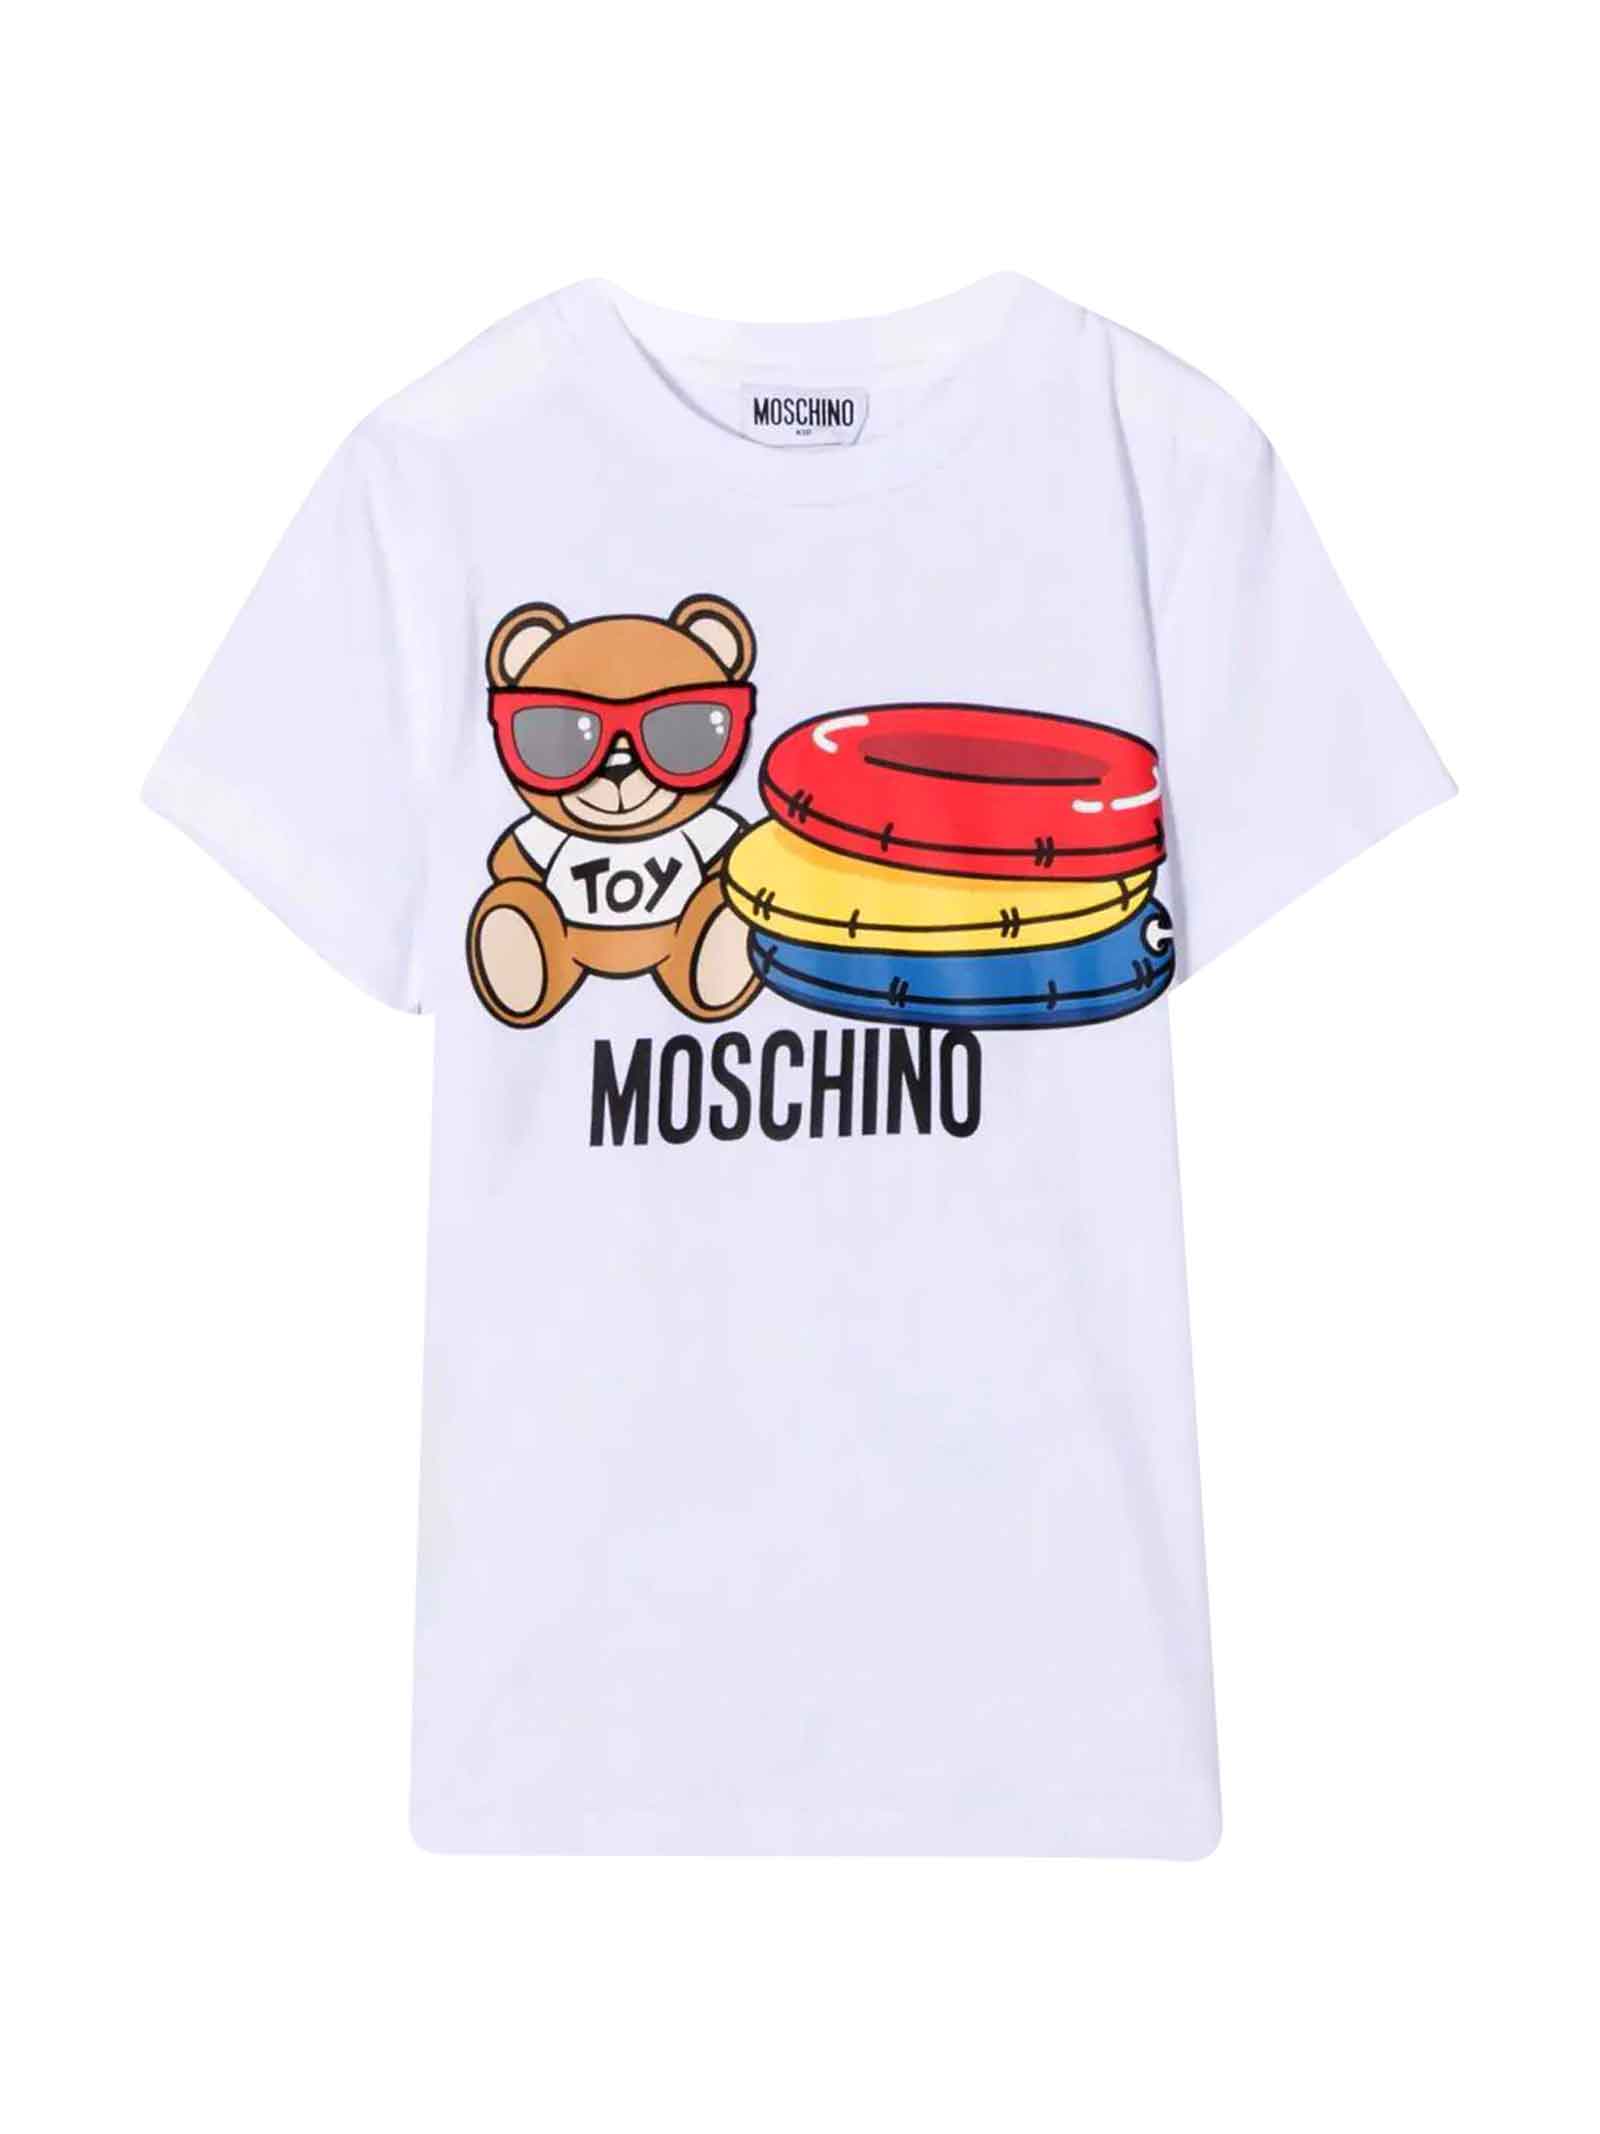 Moschino White Unisex T-shirt With Print